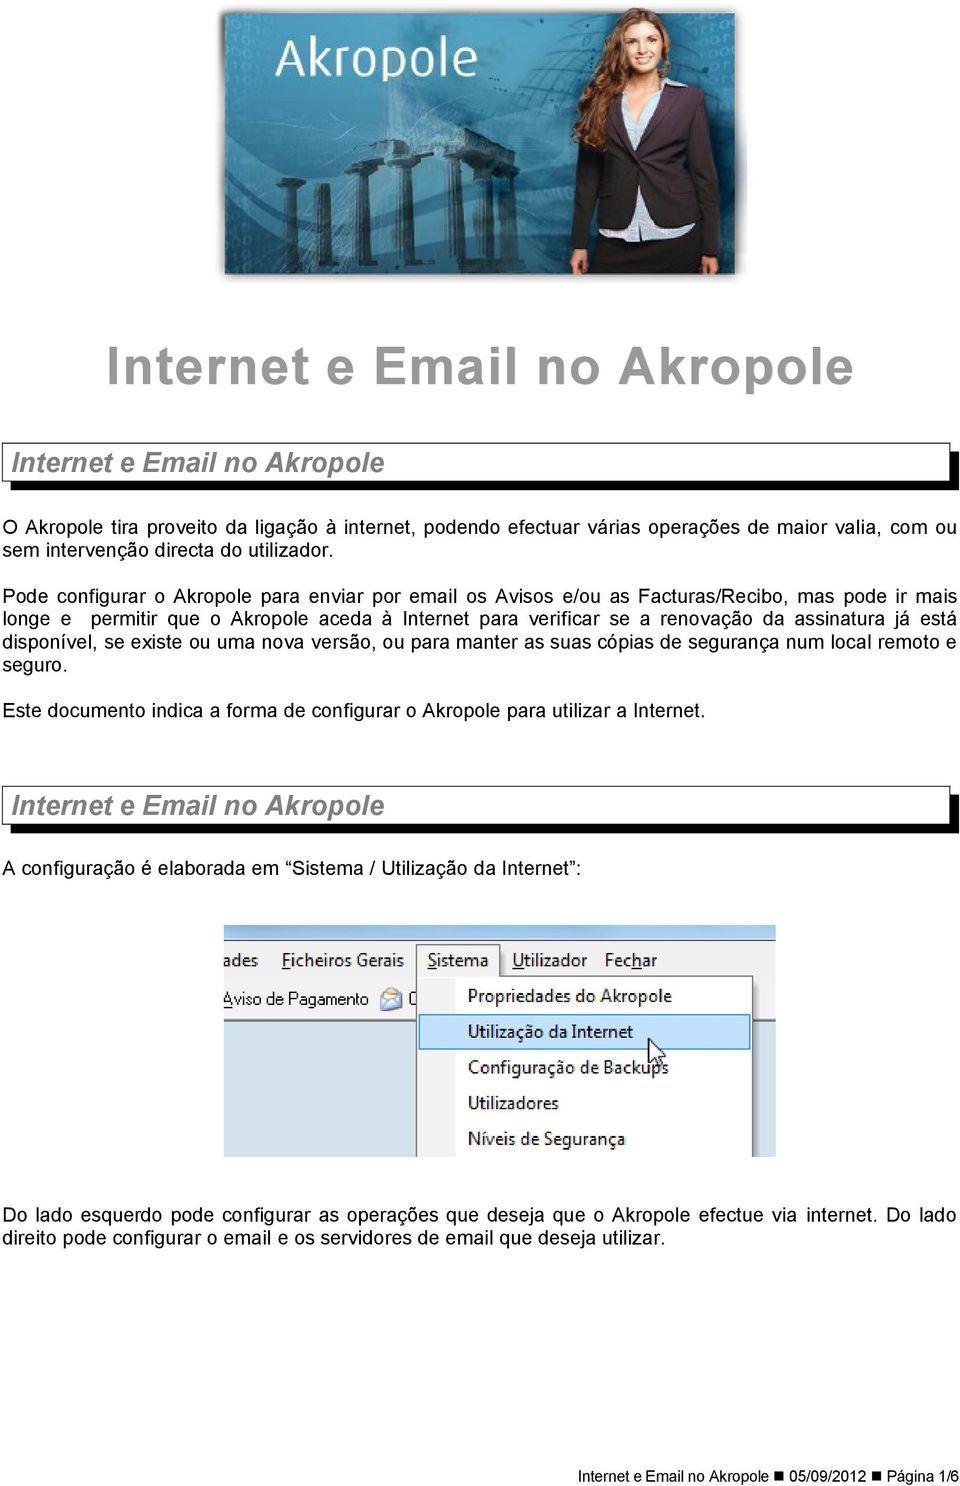 Pode configurar o Akropole para enviar por email os Avisos e/ou as Facturas/Recibo, mas pode ir mais longe e permitir que o Akropole aceda à Internet para verificar se a renovação da assinatura já